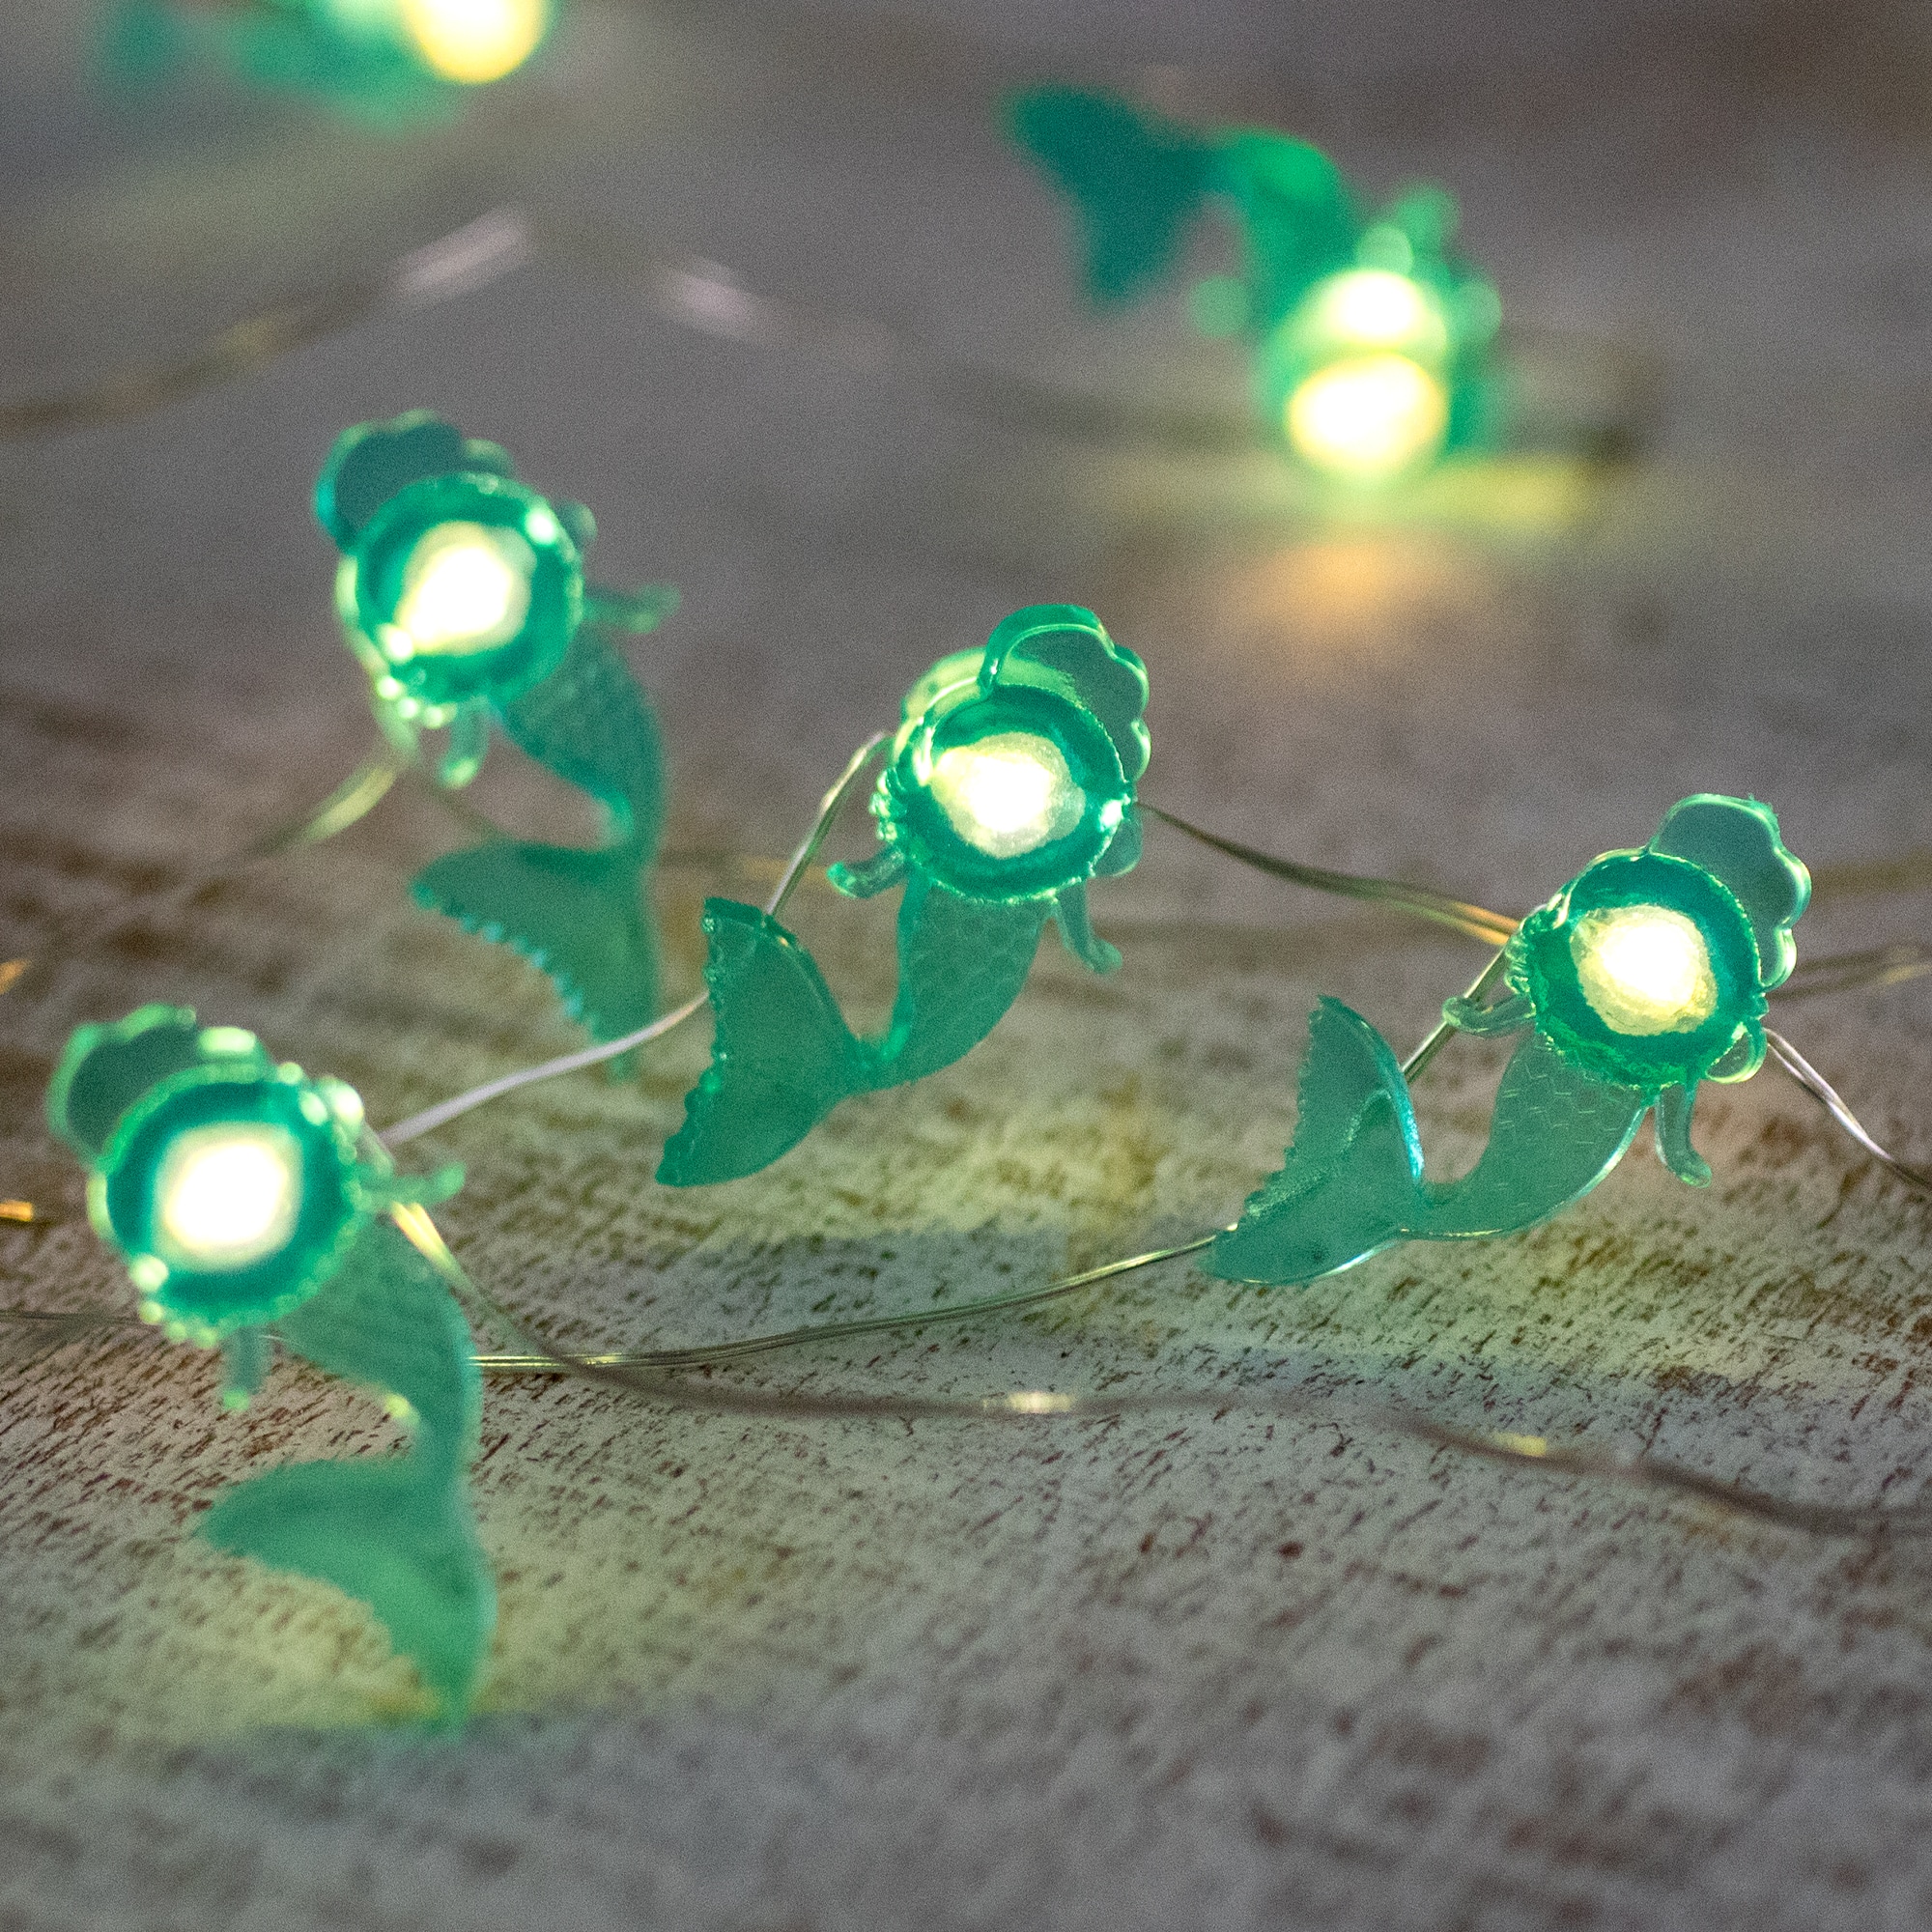 10ct. LED Teal Mermaid Fairy Lights Set